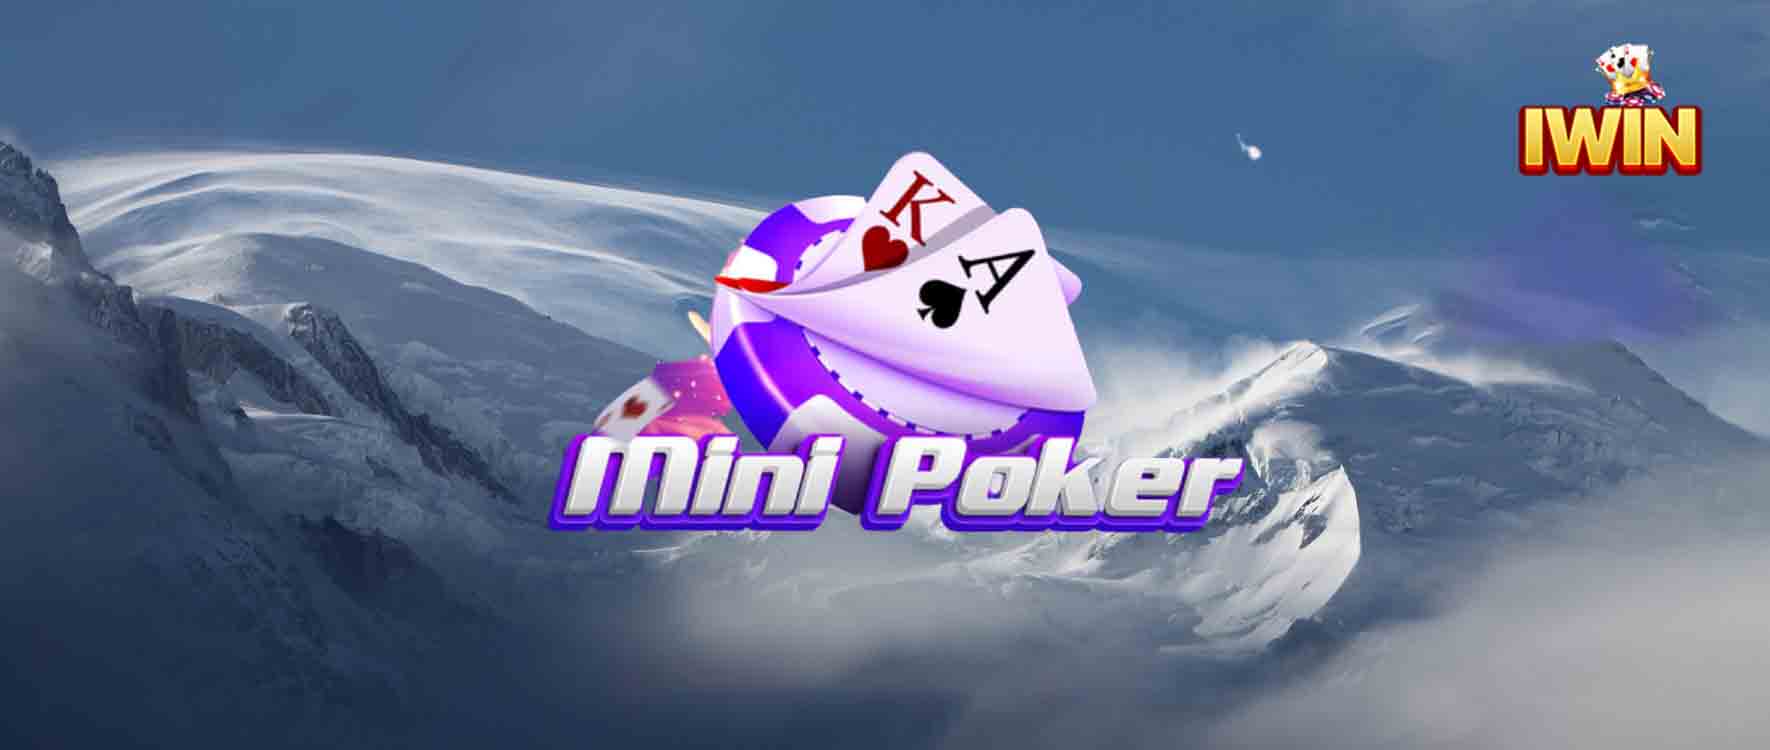 Mini game poker iwin club